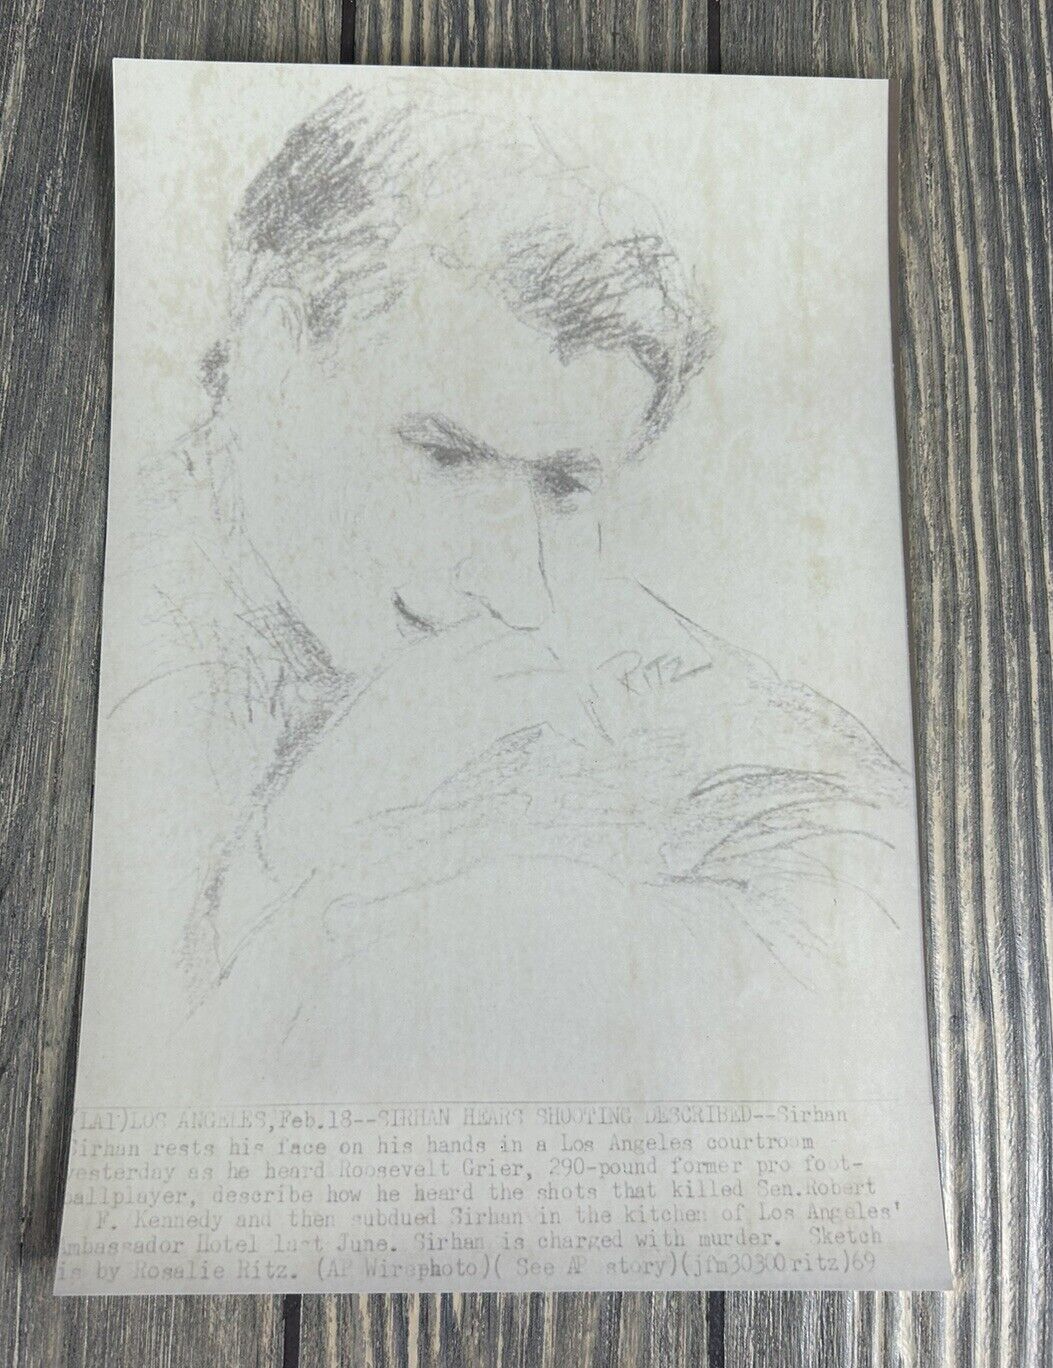 Vt Sketch 1969 Feb 18 Los Angeles SIRHAN Hears Shooting Described Photo Drawing 